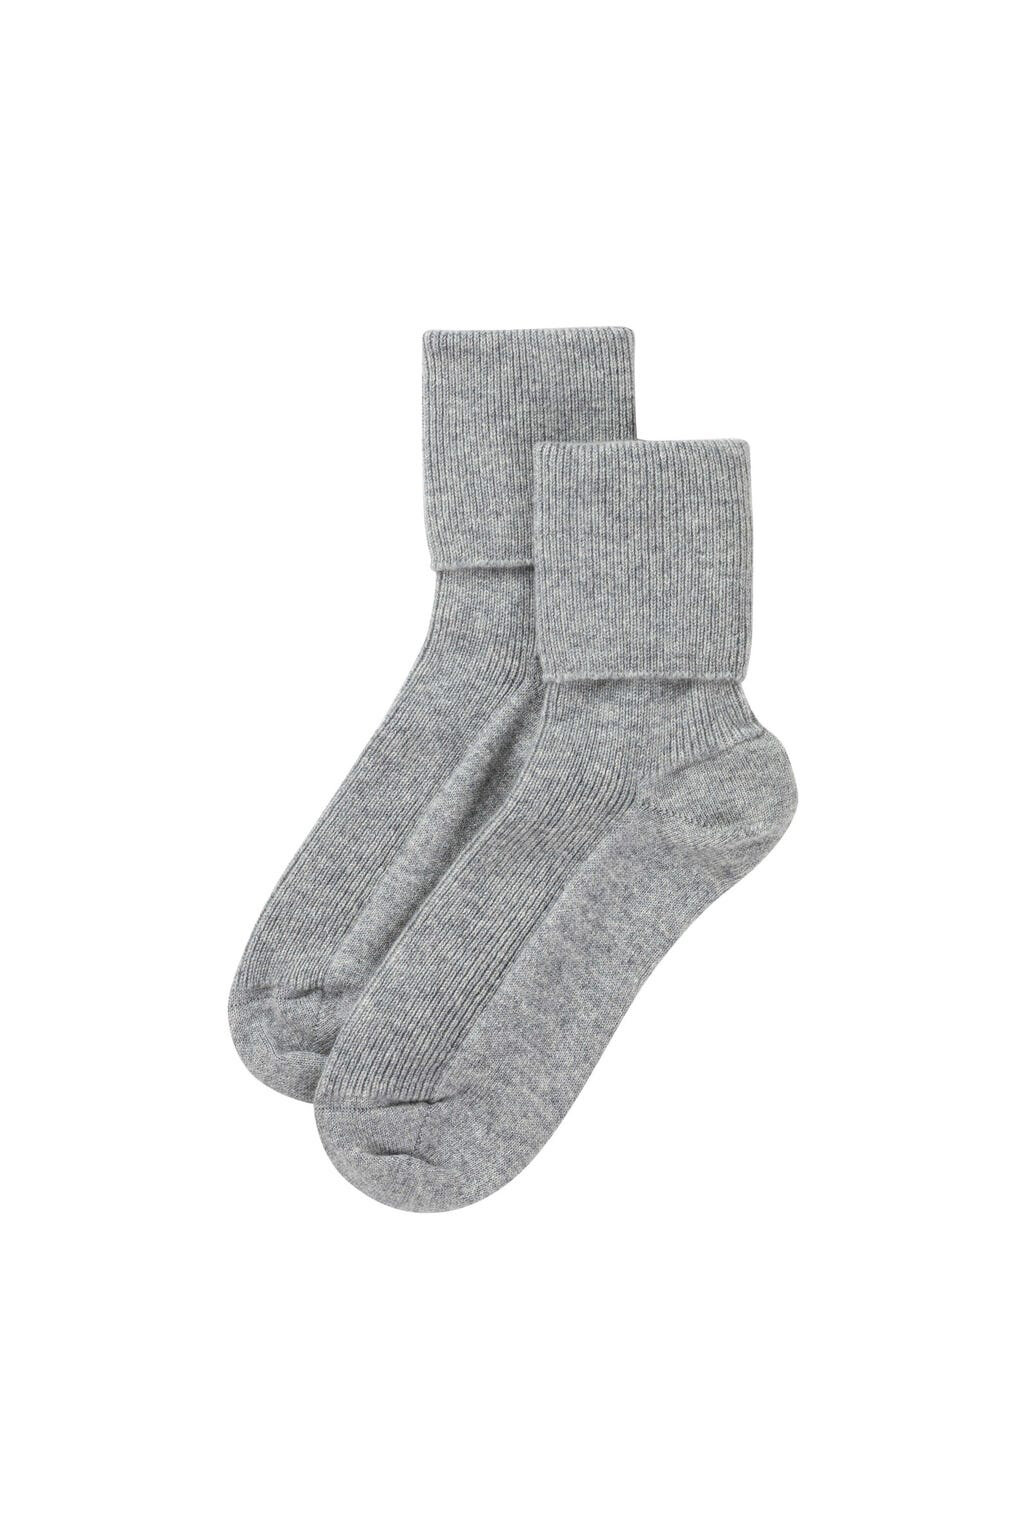 Cashmere socks, £39, Johnstons of Elgin